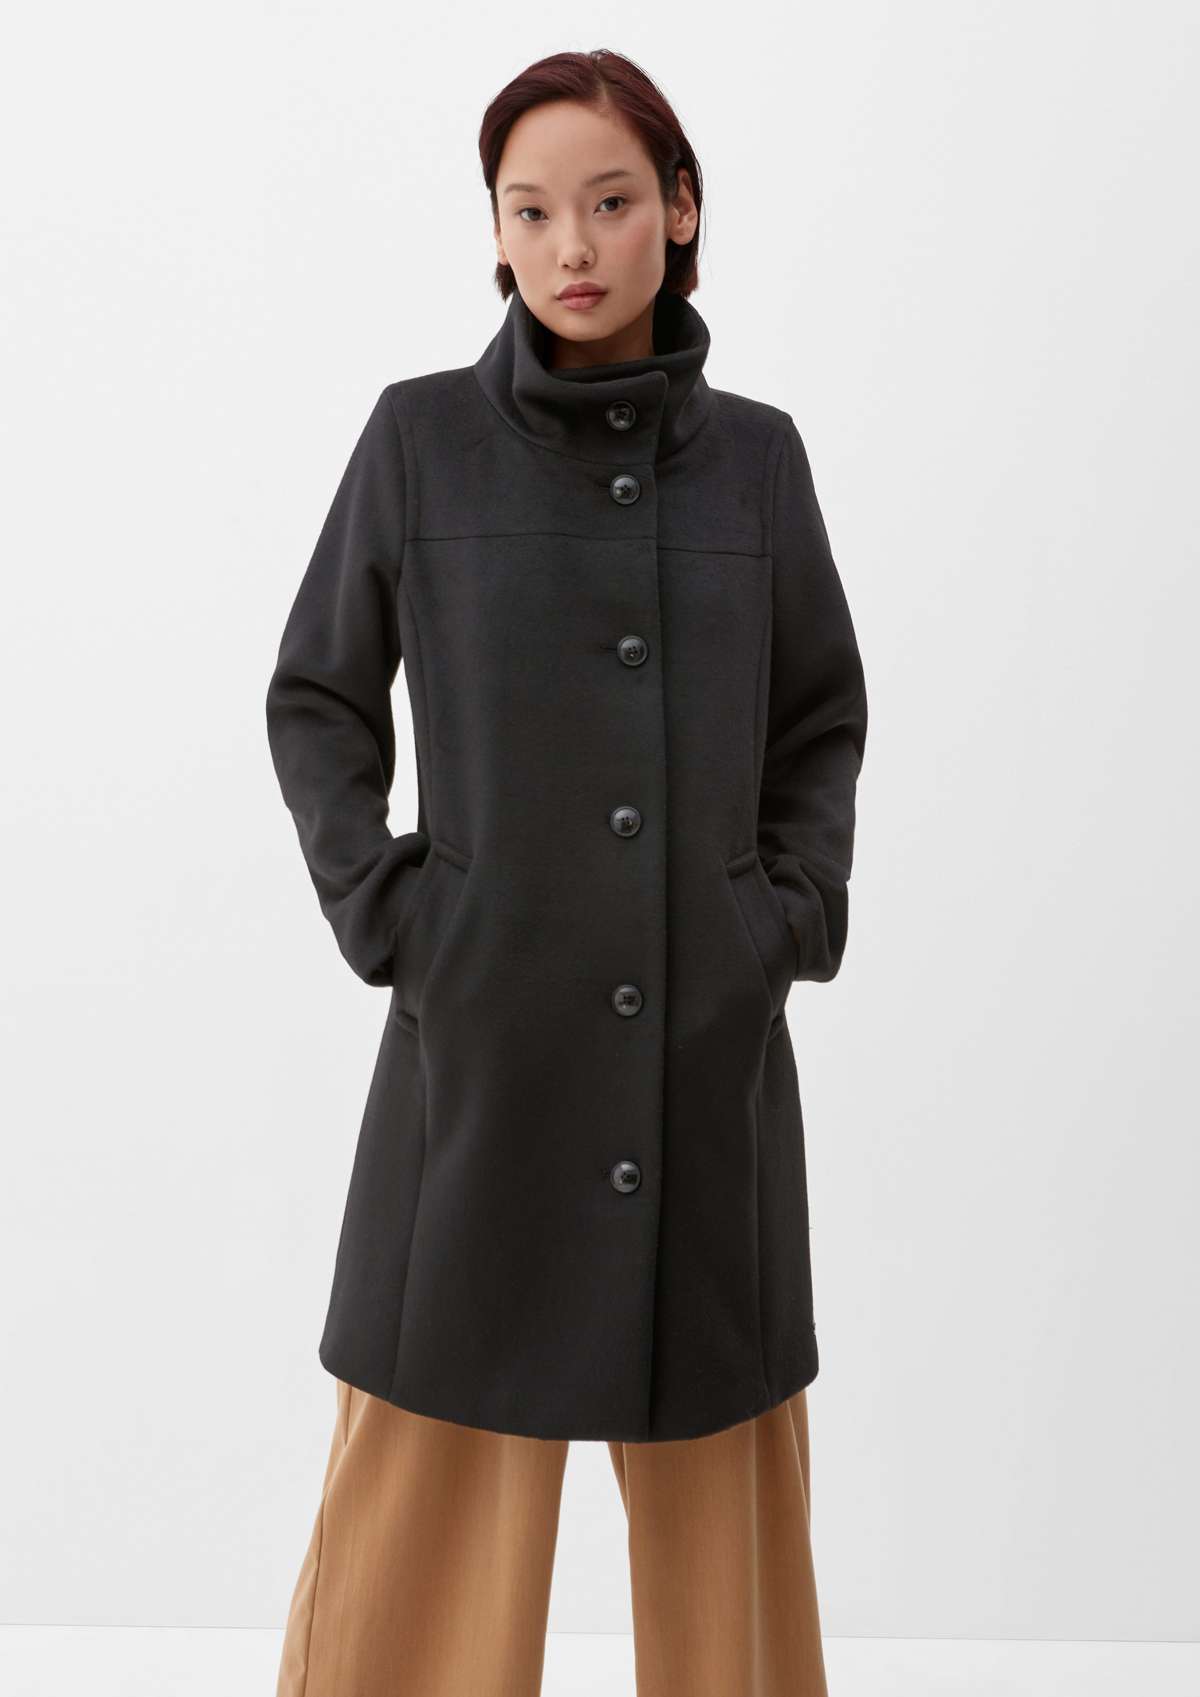 Функциональное пальто из смесовой шерсти в классическом стиле.